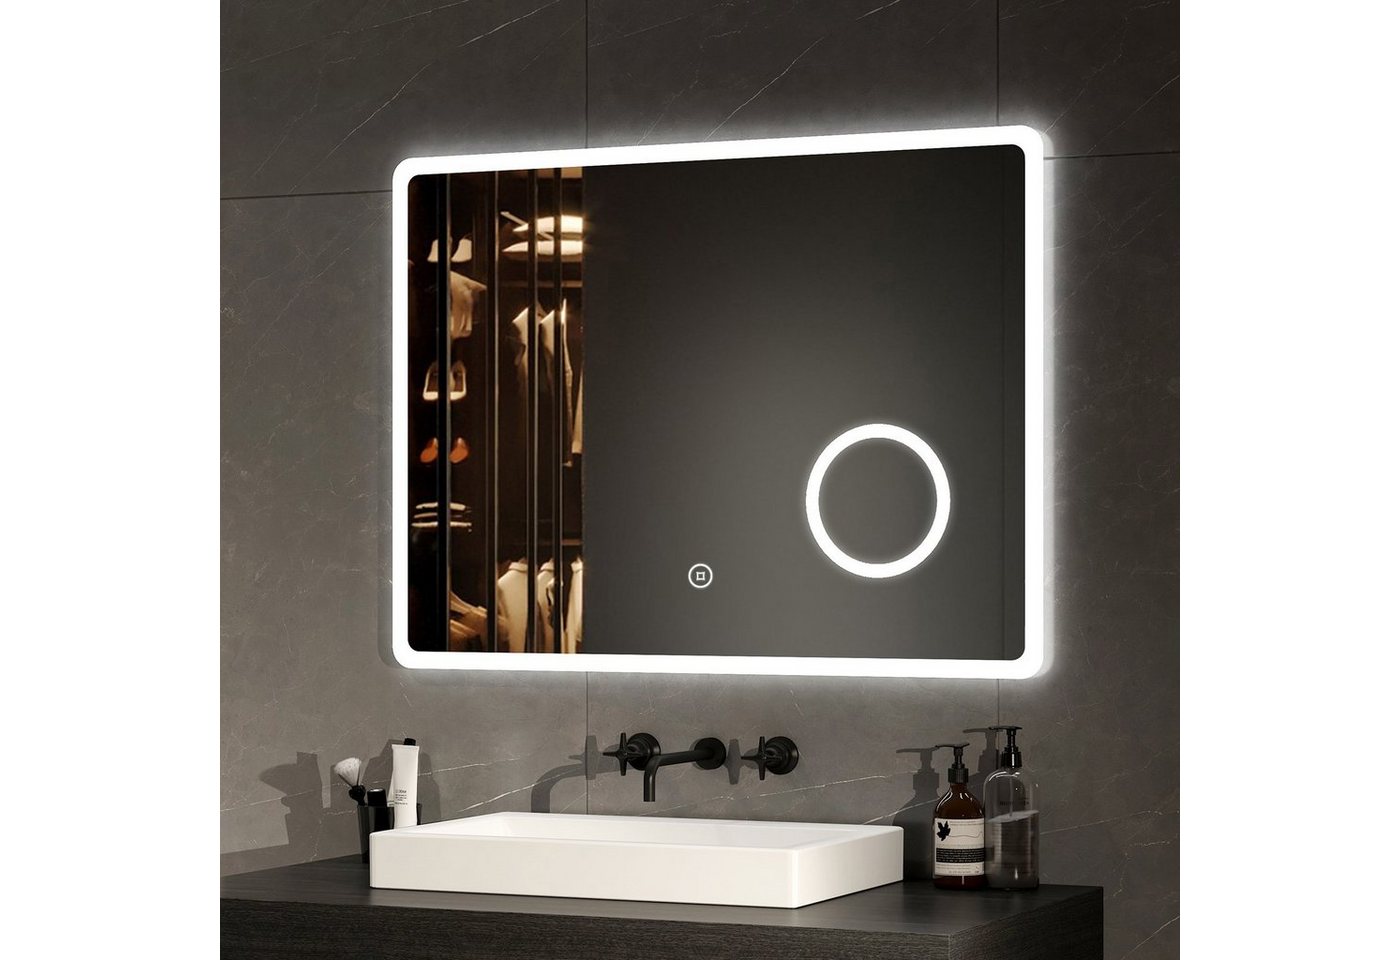 EMKE Badspiegel Badspiegel mit Beleuchtung LED Wandspiegel Badezimmerspiegel, mit Vergrößerung, Touchschalter, Kaltweißes Licht (Modell M) von EMKE